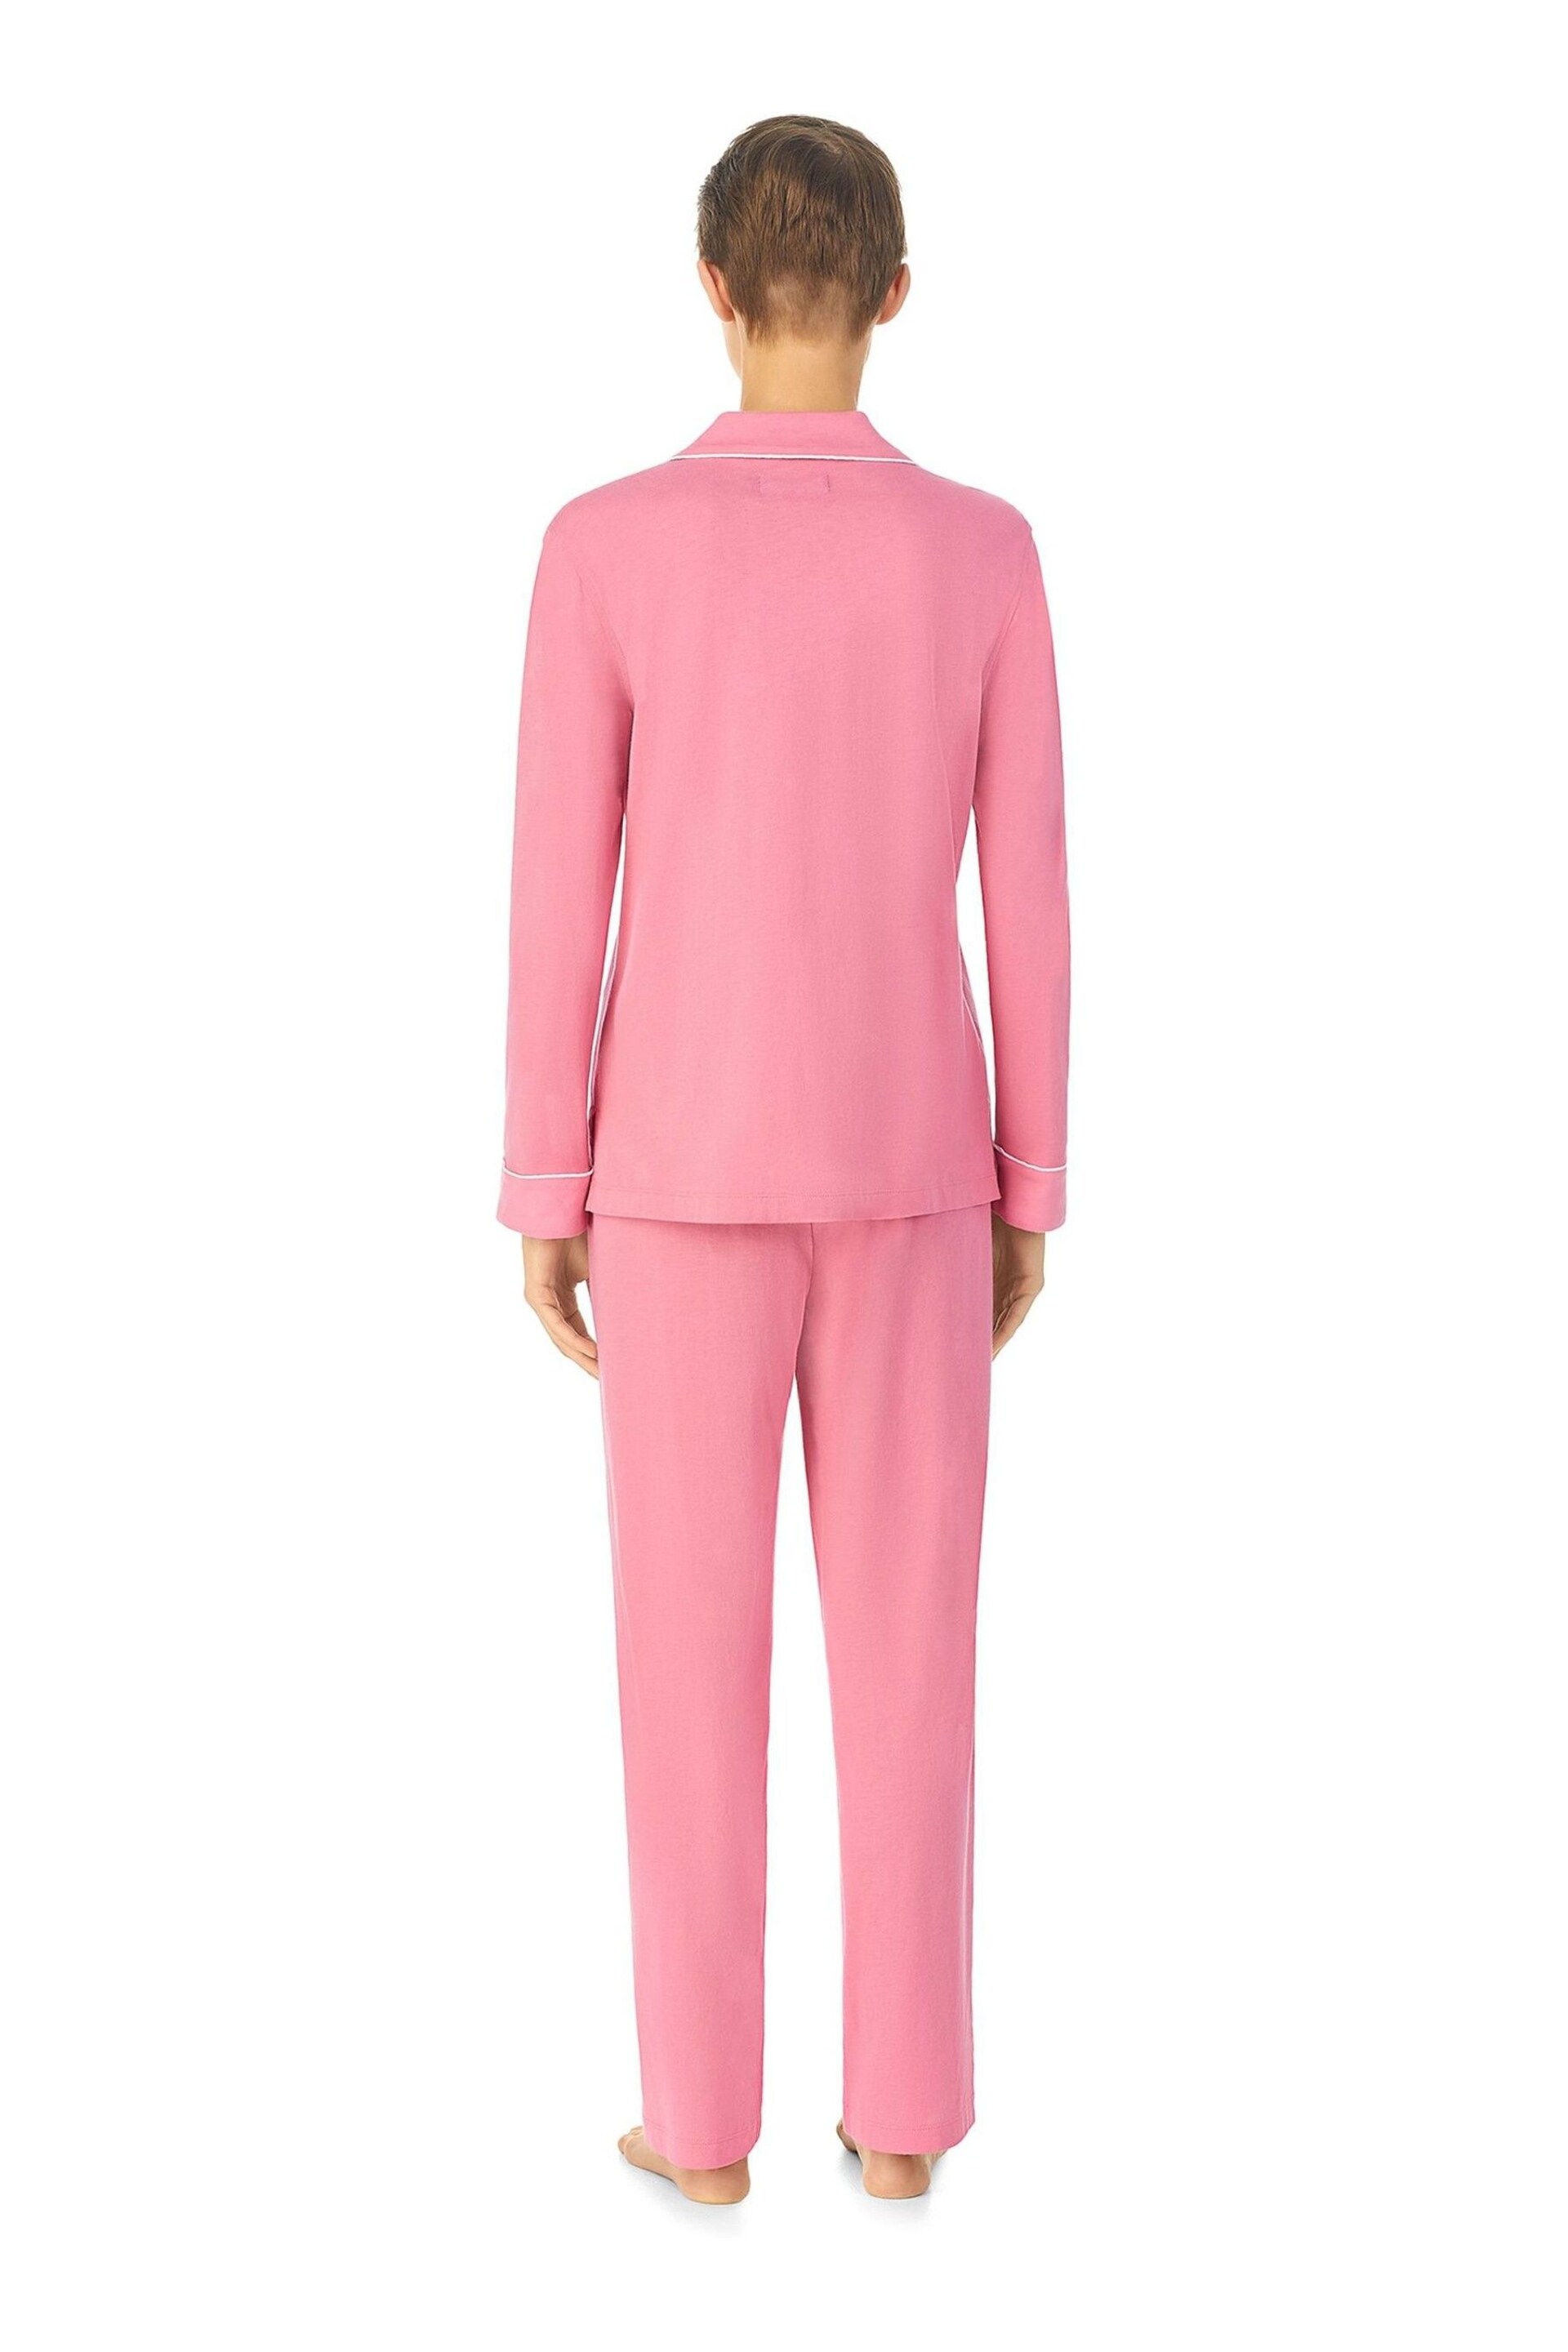 Lauren Ralph Lauren Pink Cotton Long Sleeve Pyjama Set - Image 2 of 3